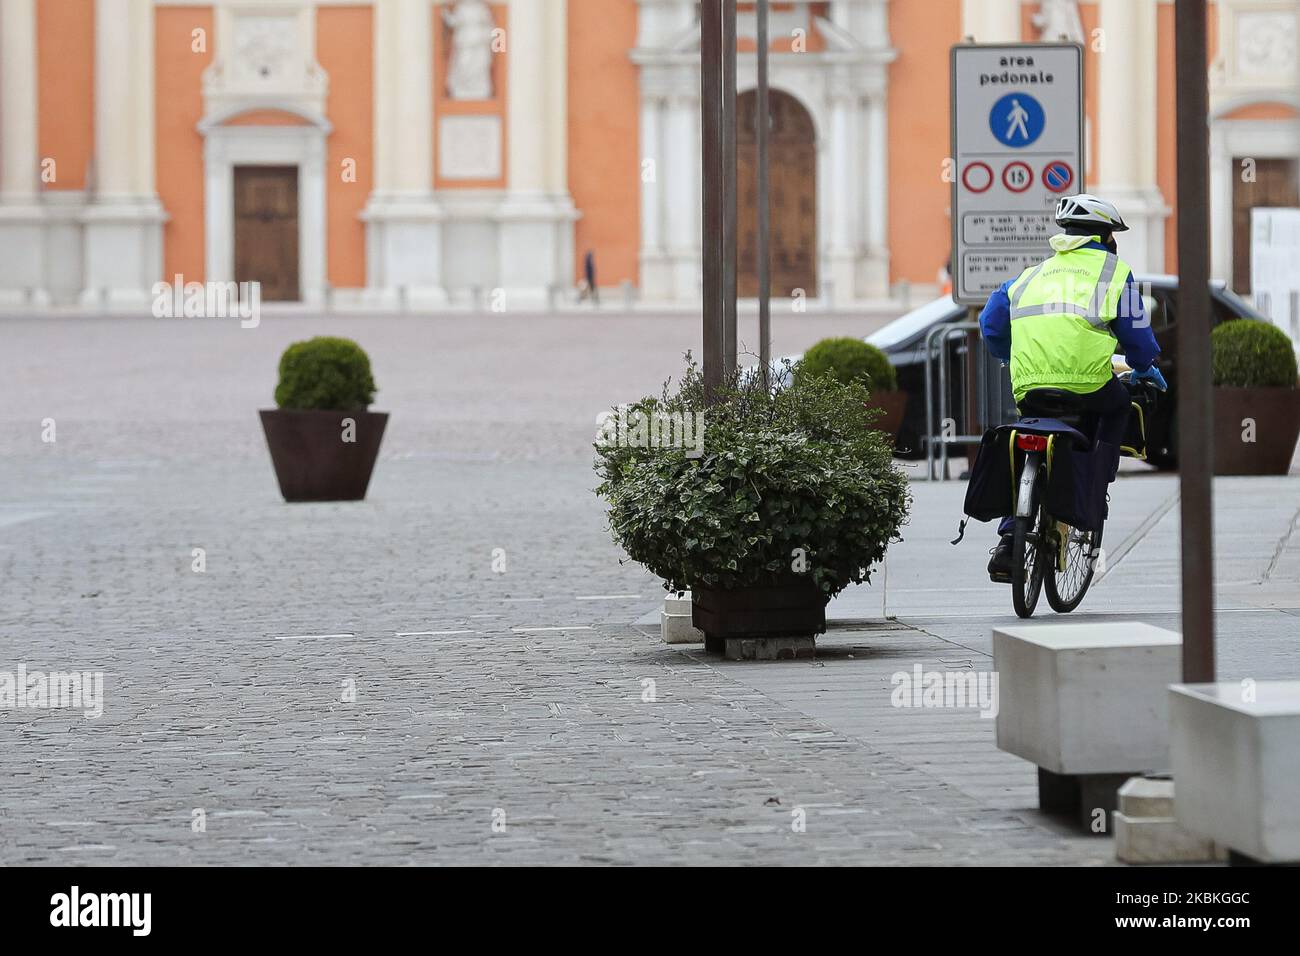 Un postino dell'Ufficio postale italiano consegna la posta in bicicletta nel centro storico durante la pandemia del COVID-19 in Italia il 25 marzo 2020 a Carpi, Italia. (Foto di Emmanuele Ciancaglini/NurPhoto) Foto Stock